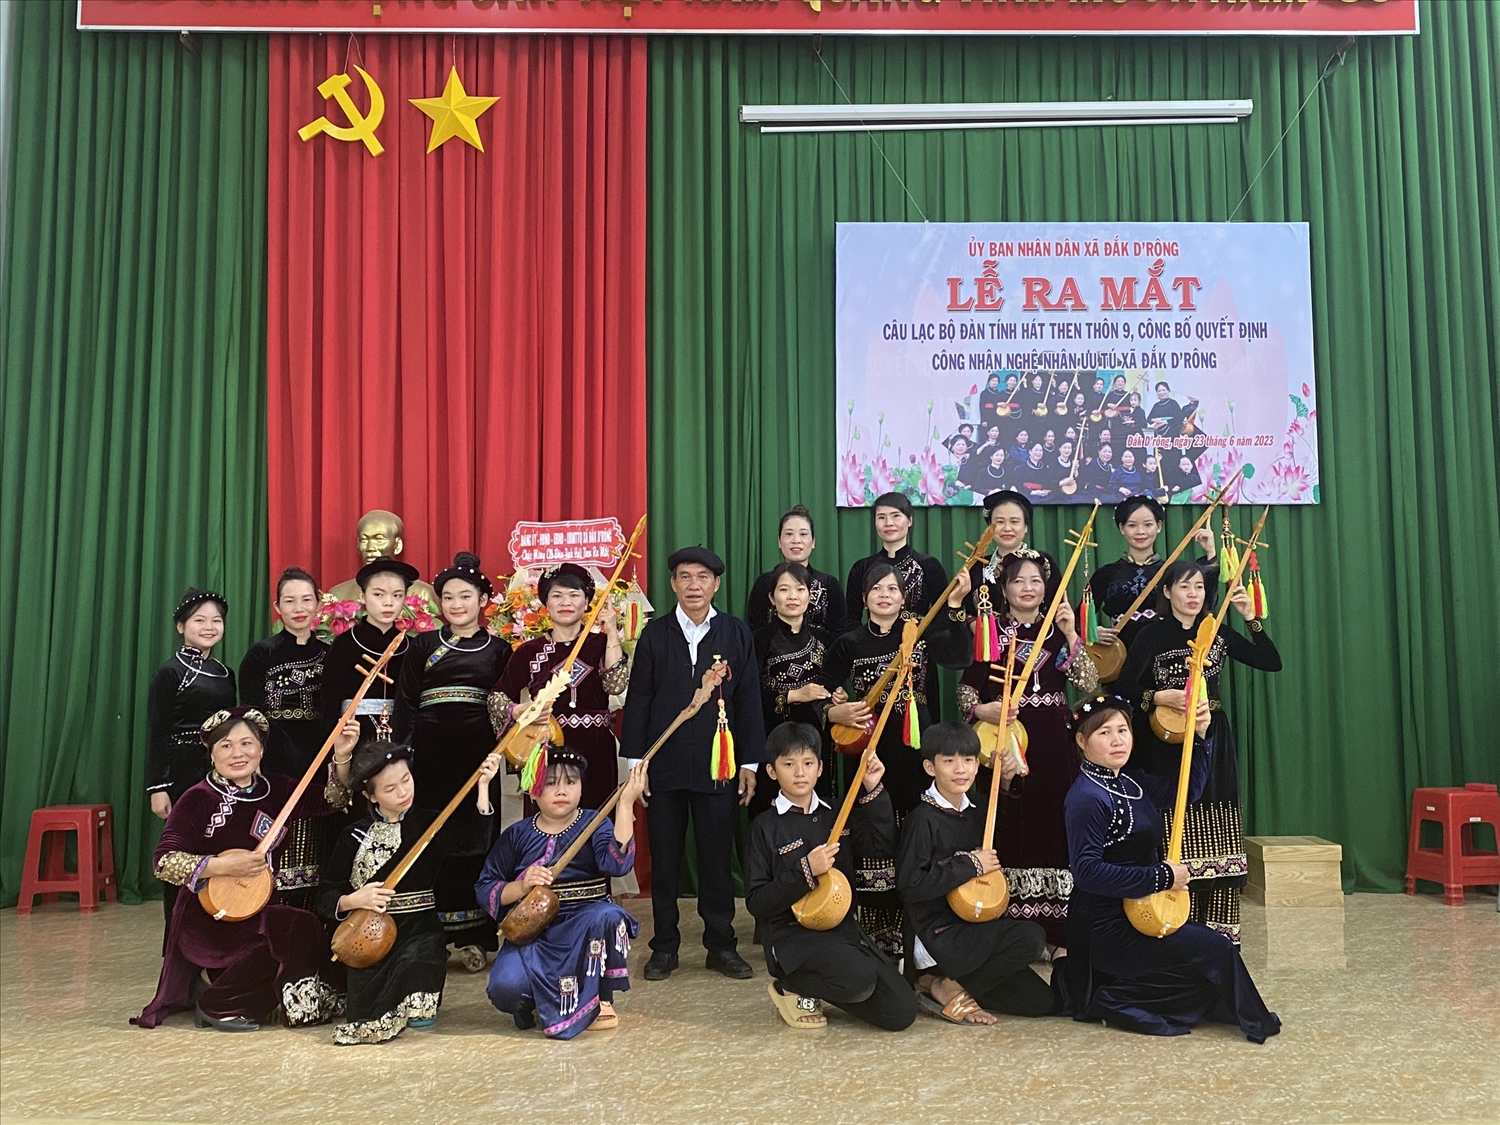 Nhiều thanh niên, học sinh xã Đắk Drông tham gia câu lạc bộ đàn tính hát then